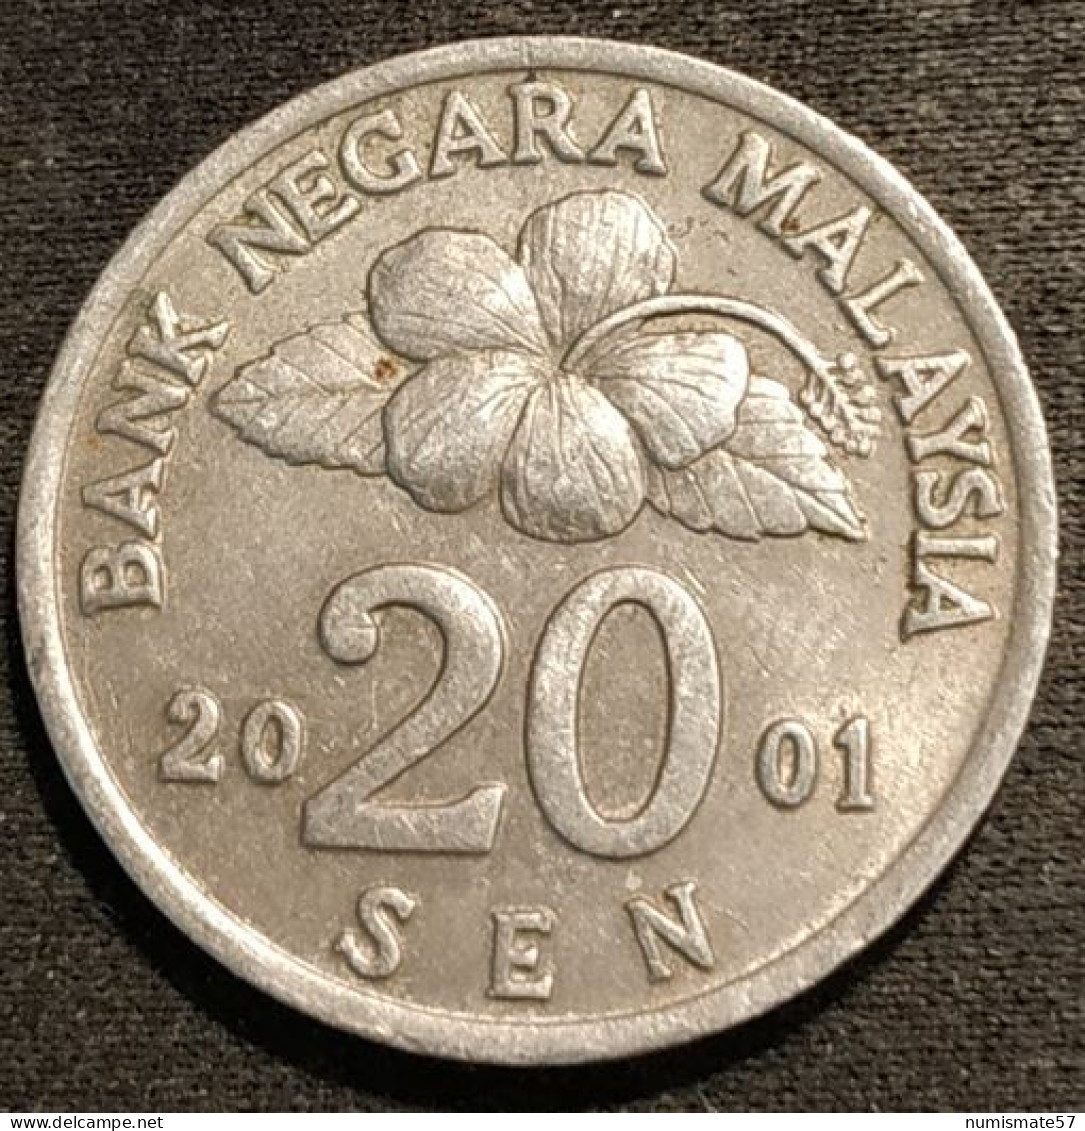 MALAISIE - 20 SEN 2001 - Agong - KM 52 - ( MALAYSIA ) - Malesia